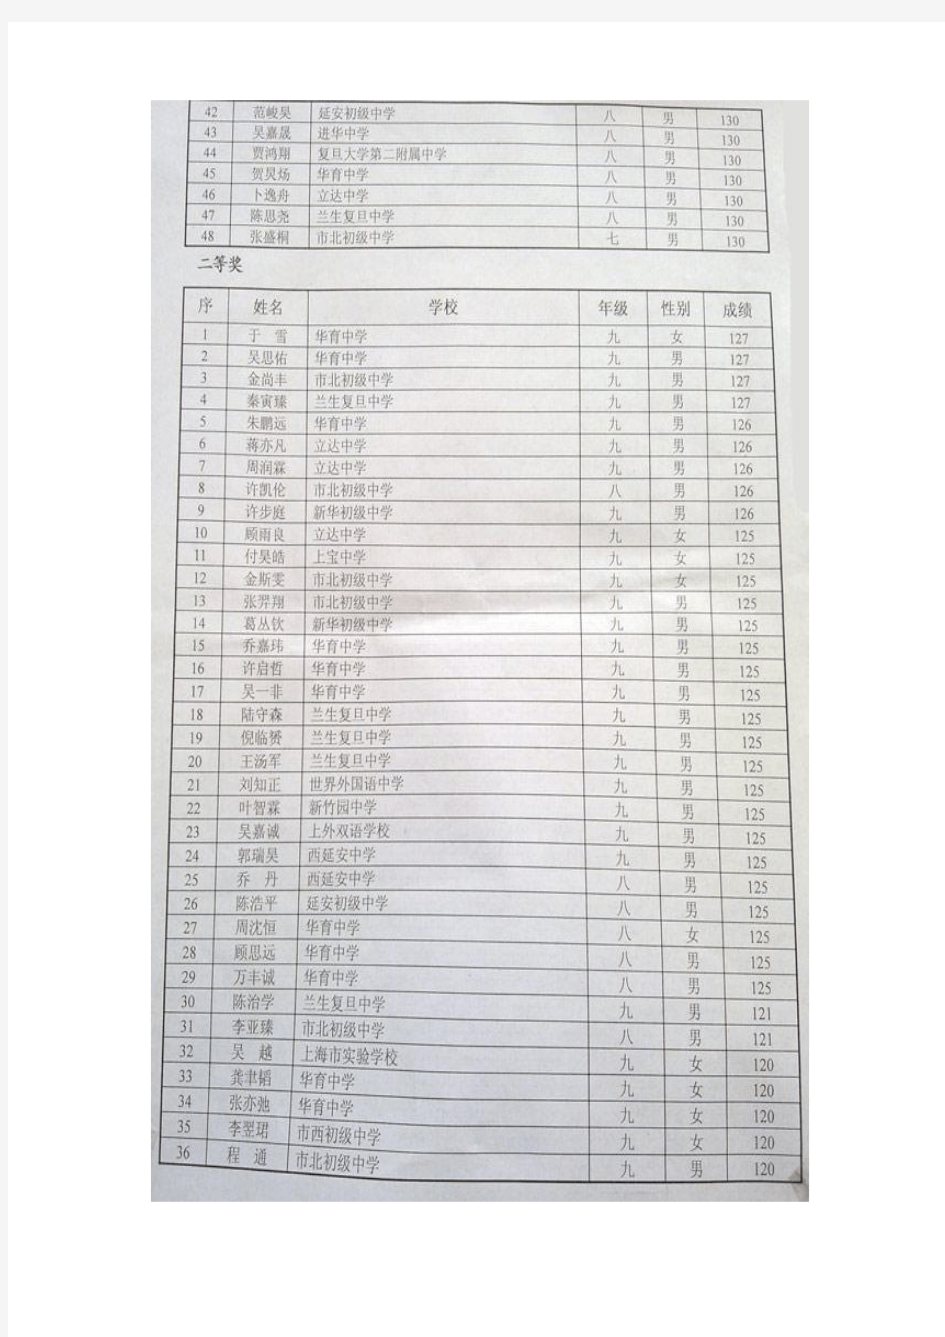 2012年上海市初中数学竞赛(新知杯)获奖名单